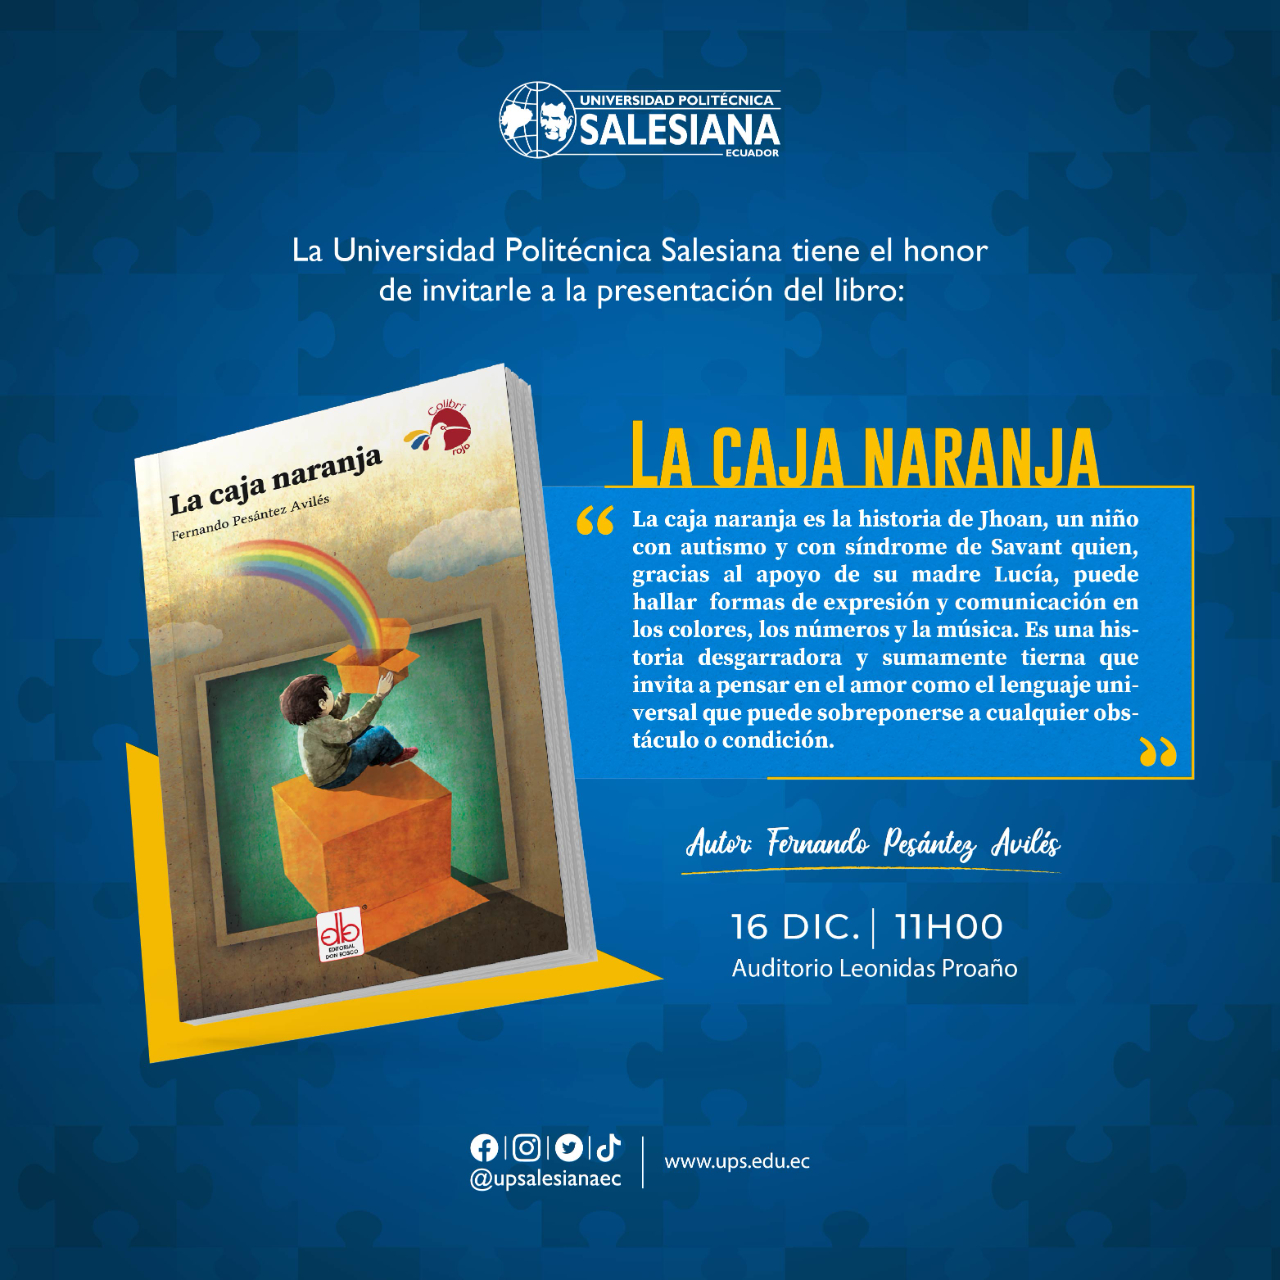 Imagen de invitación para el lanzamiento del libro "La Caja Naranja", contiene la imagen de la portada del libro, un breve prólogo y la fecha que se realizó el lanzamiento.